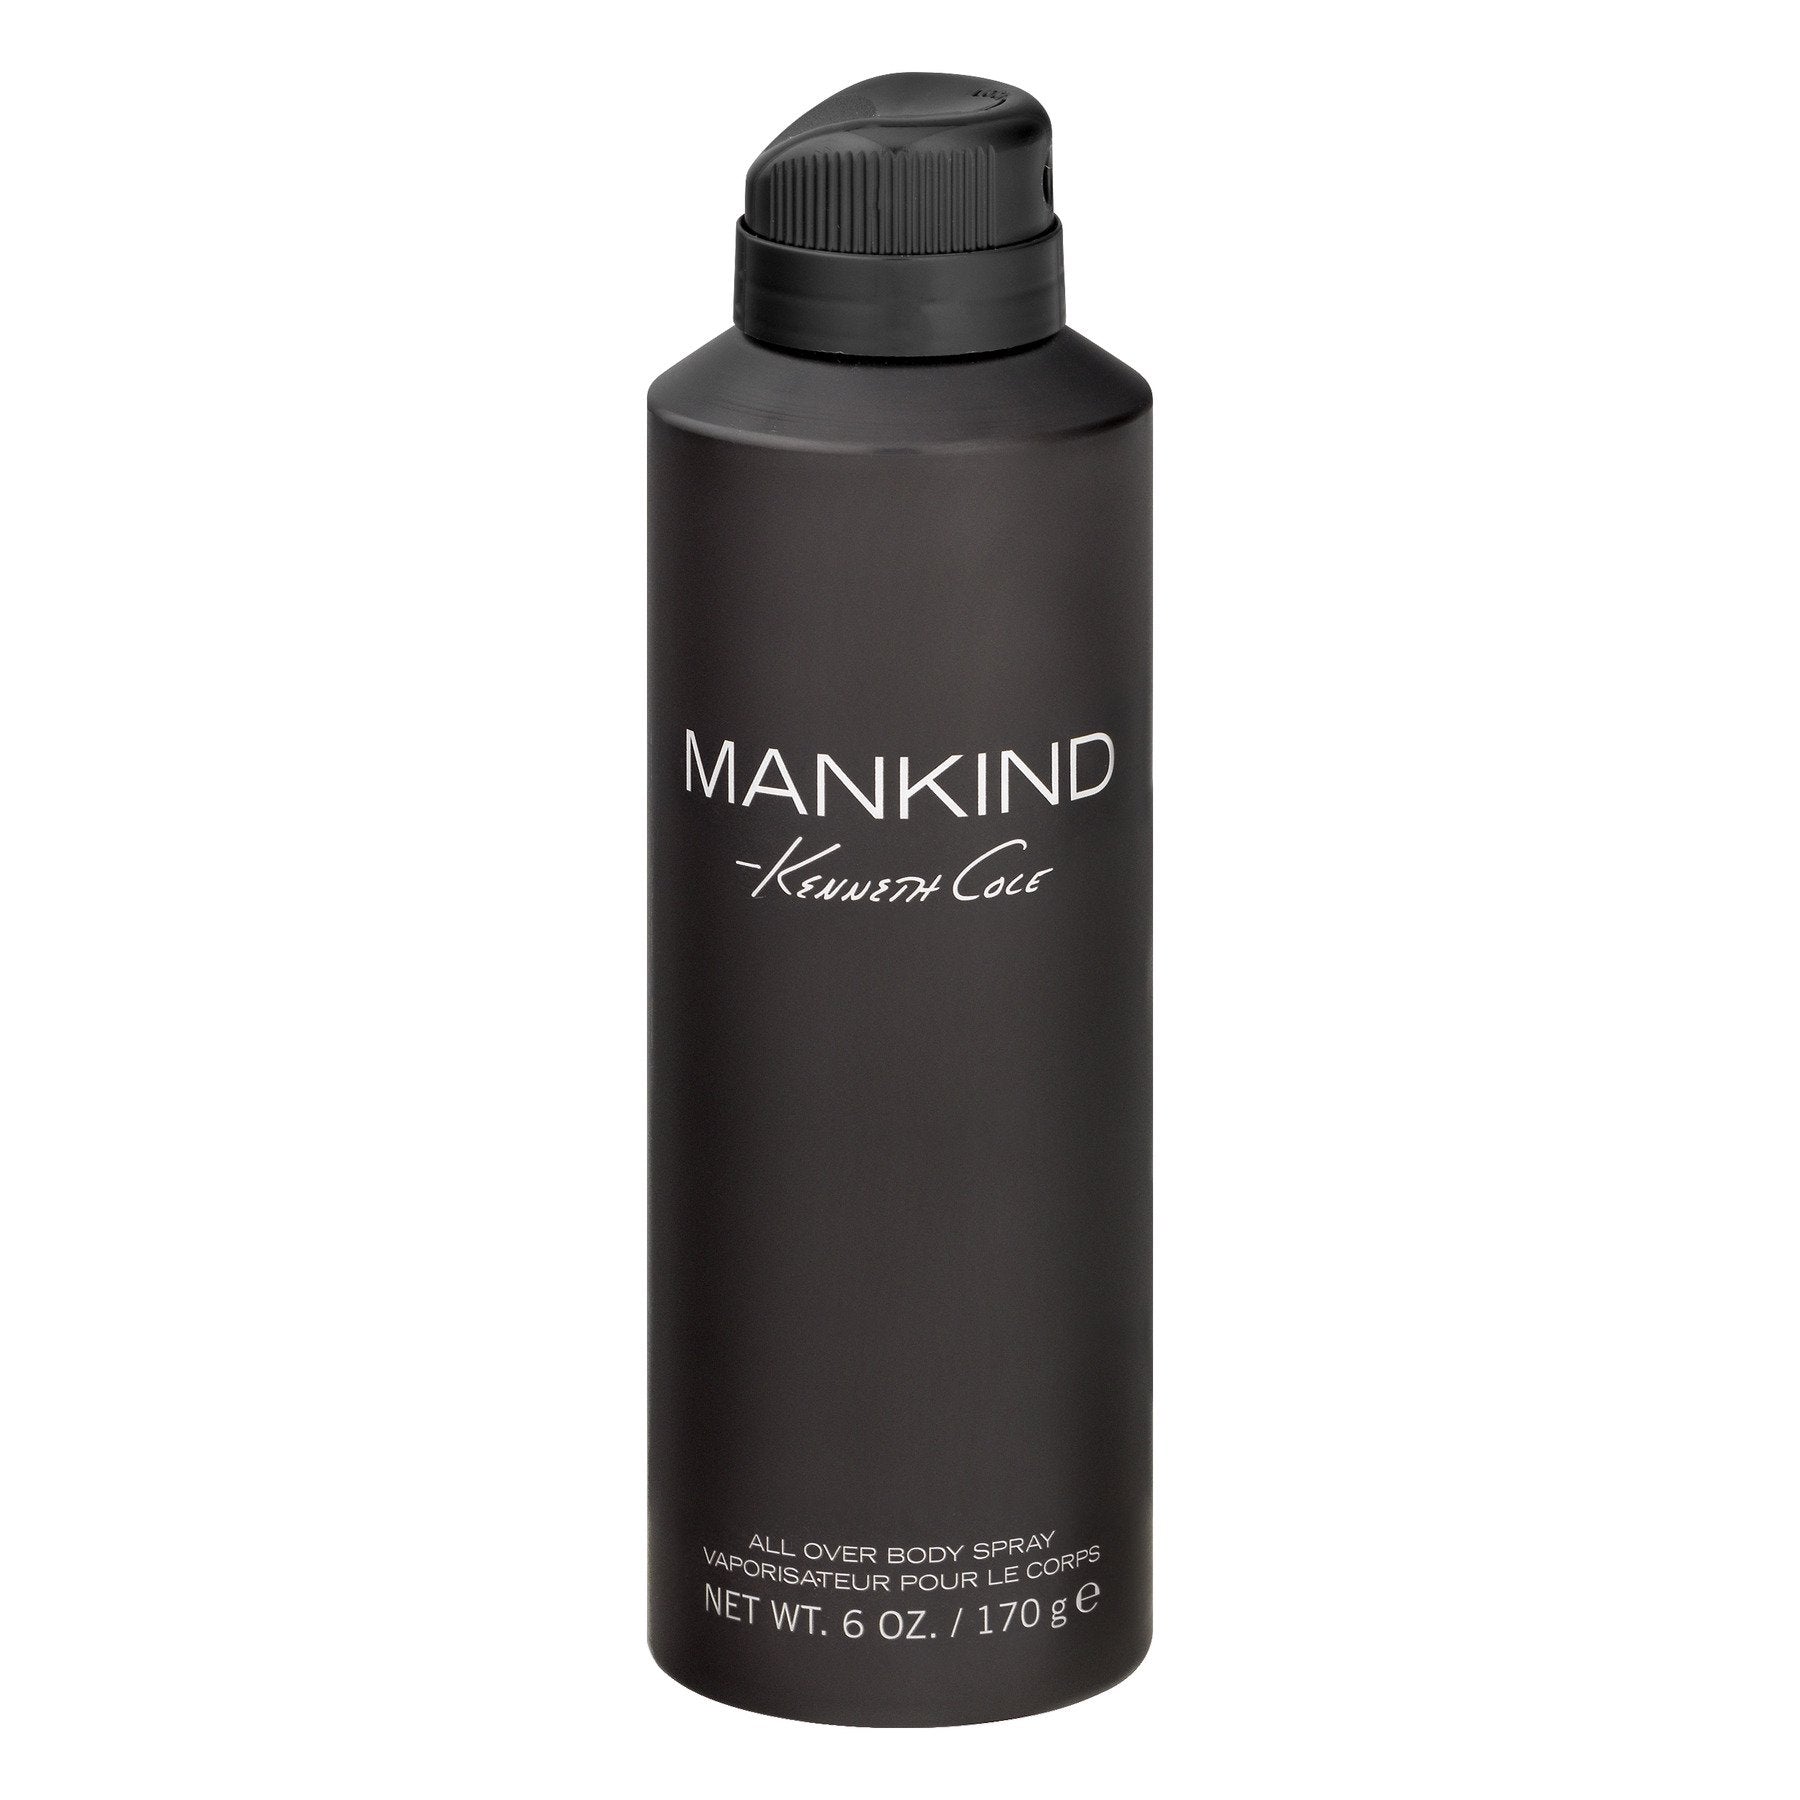 FRAG - Kenneth Cole Mankind Body Spray 6.0 oz (170mL)